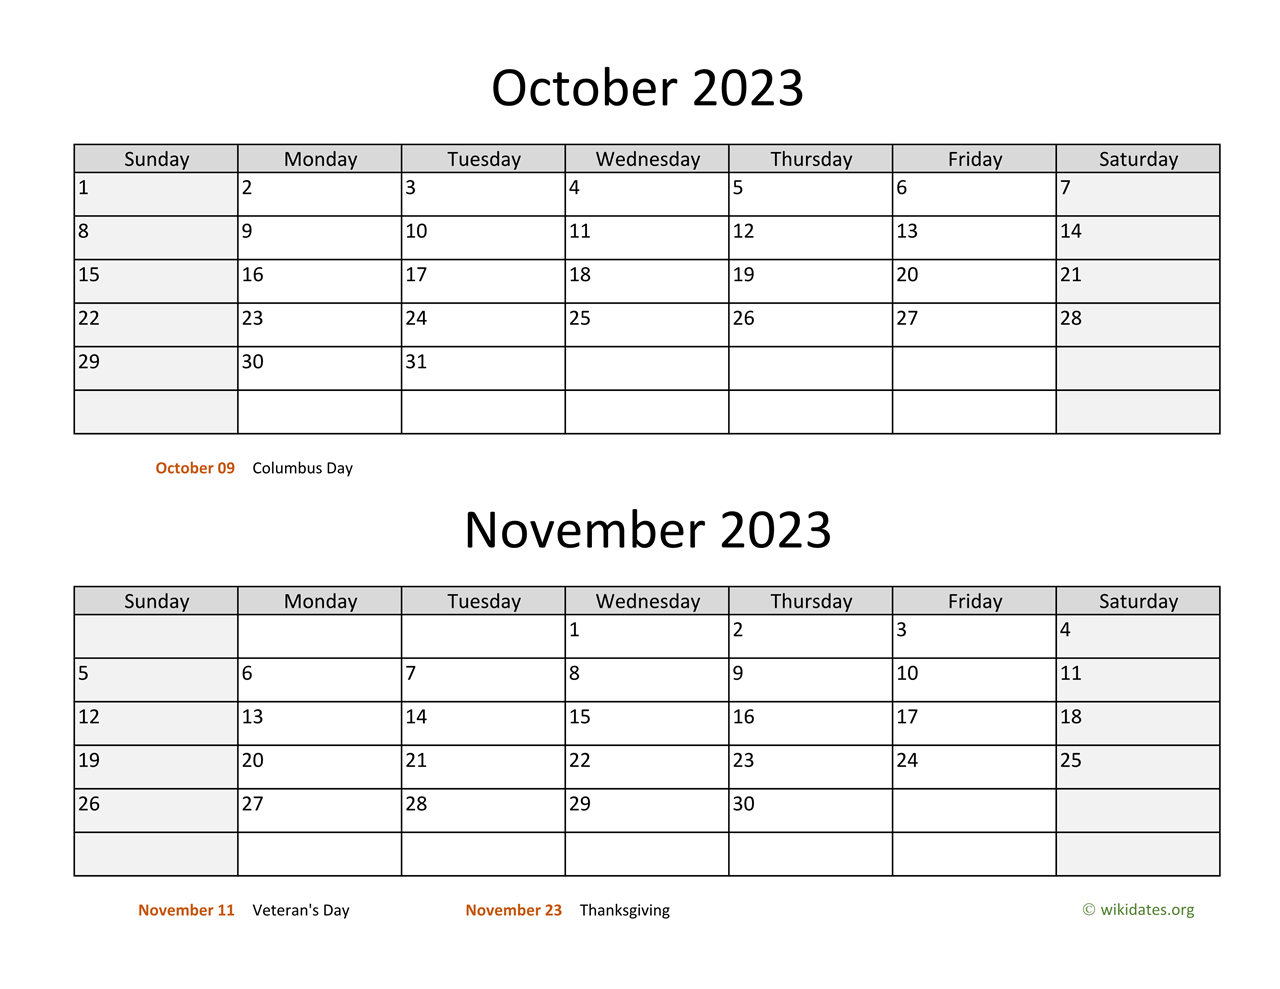 October and November 2023 Calendar | WikiDates.org